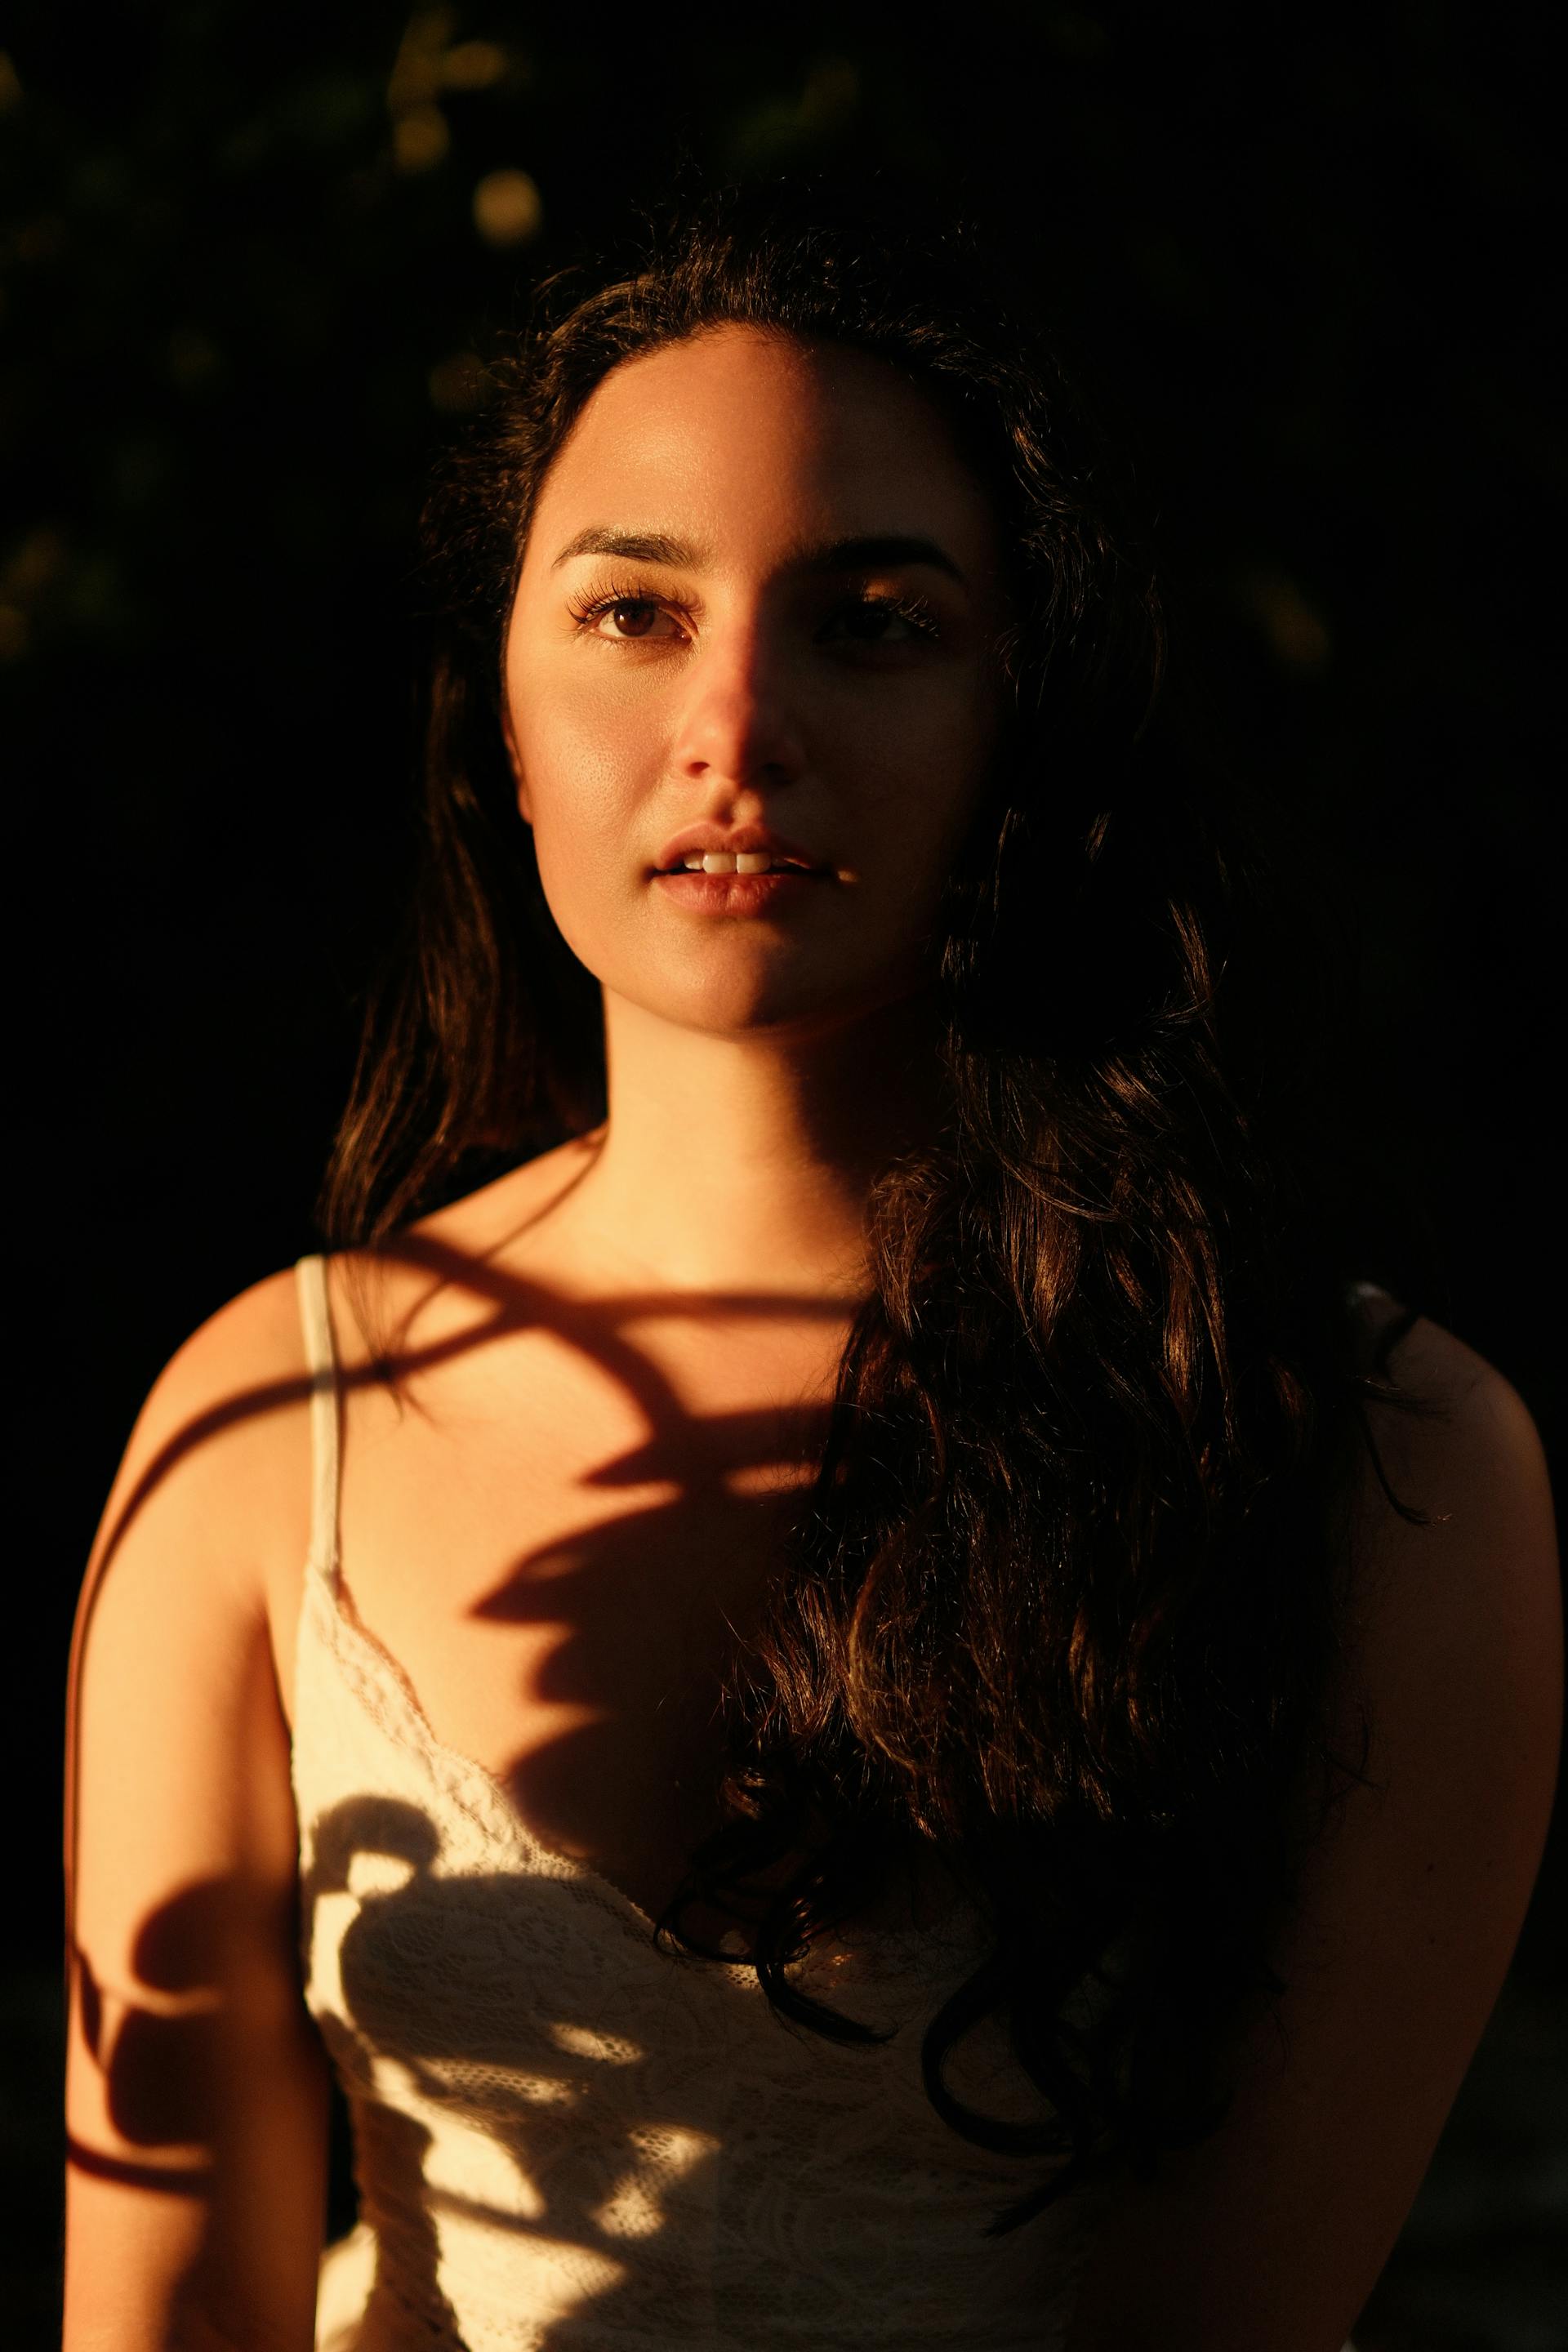 Das Porträt einer jungen Frau mit Schatten, die auf ihren Körper fallen | Quelle: Pexels